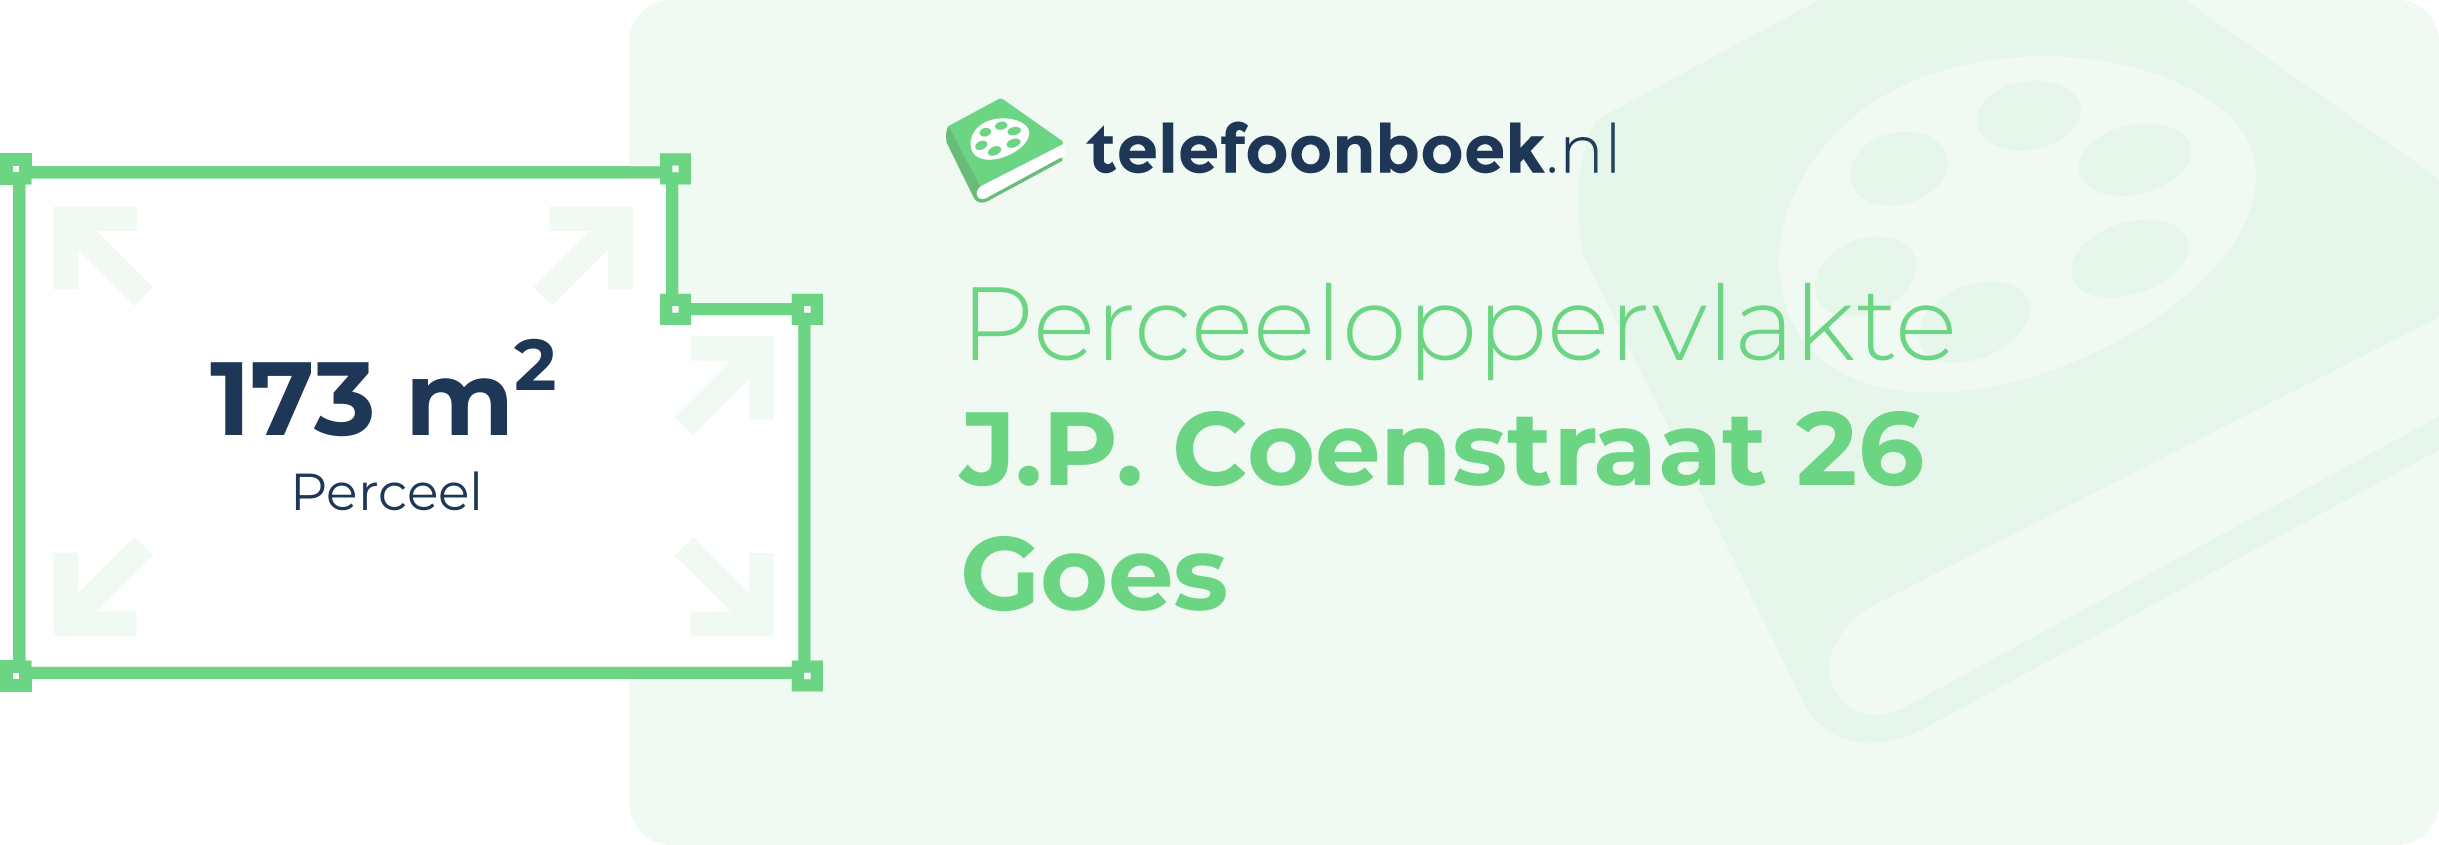 Perceeloppervlakte J.P. Coenstraat 26 Goes